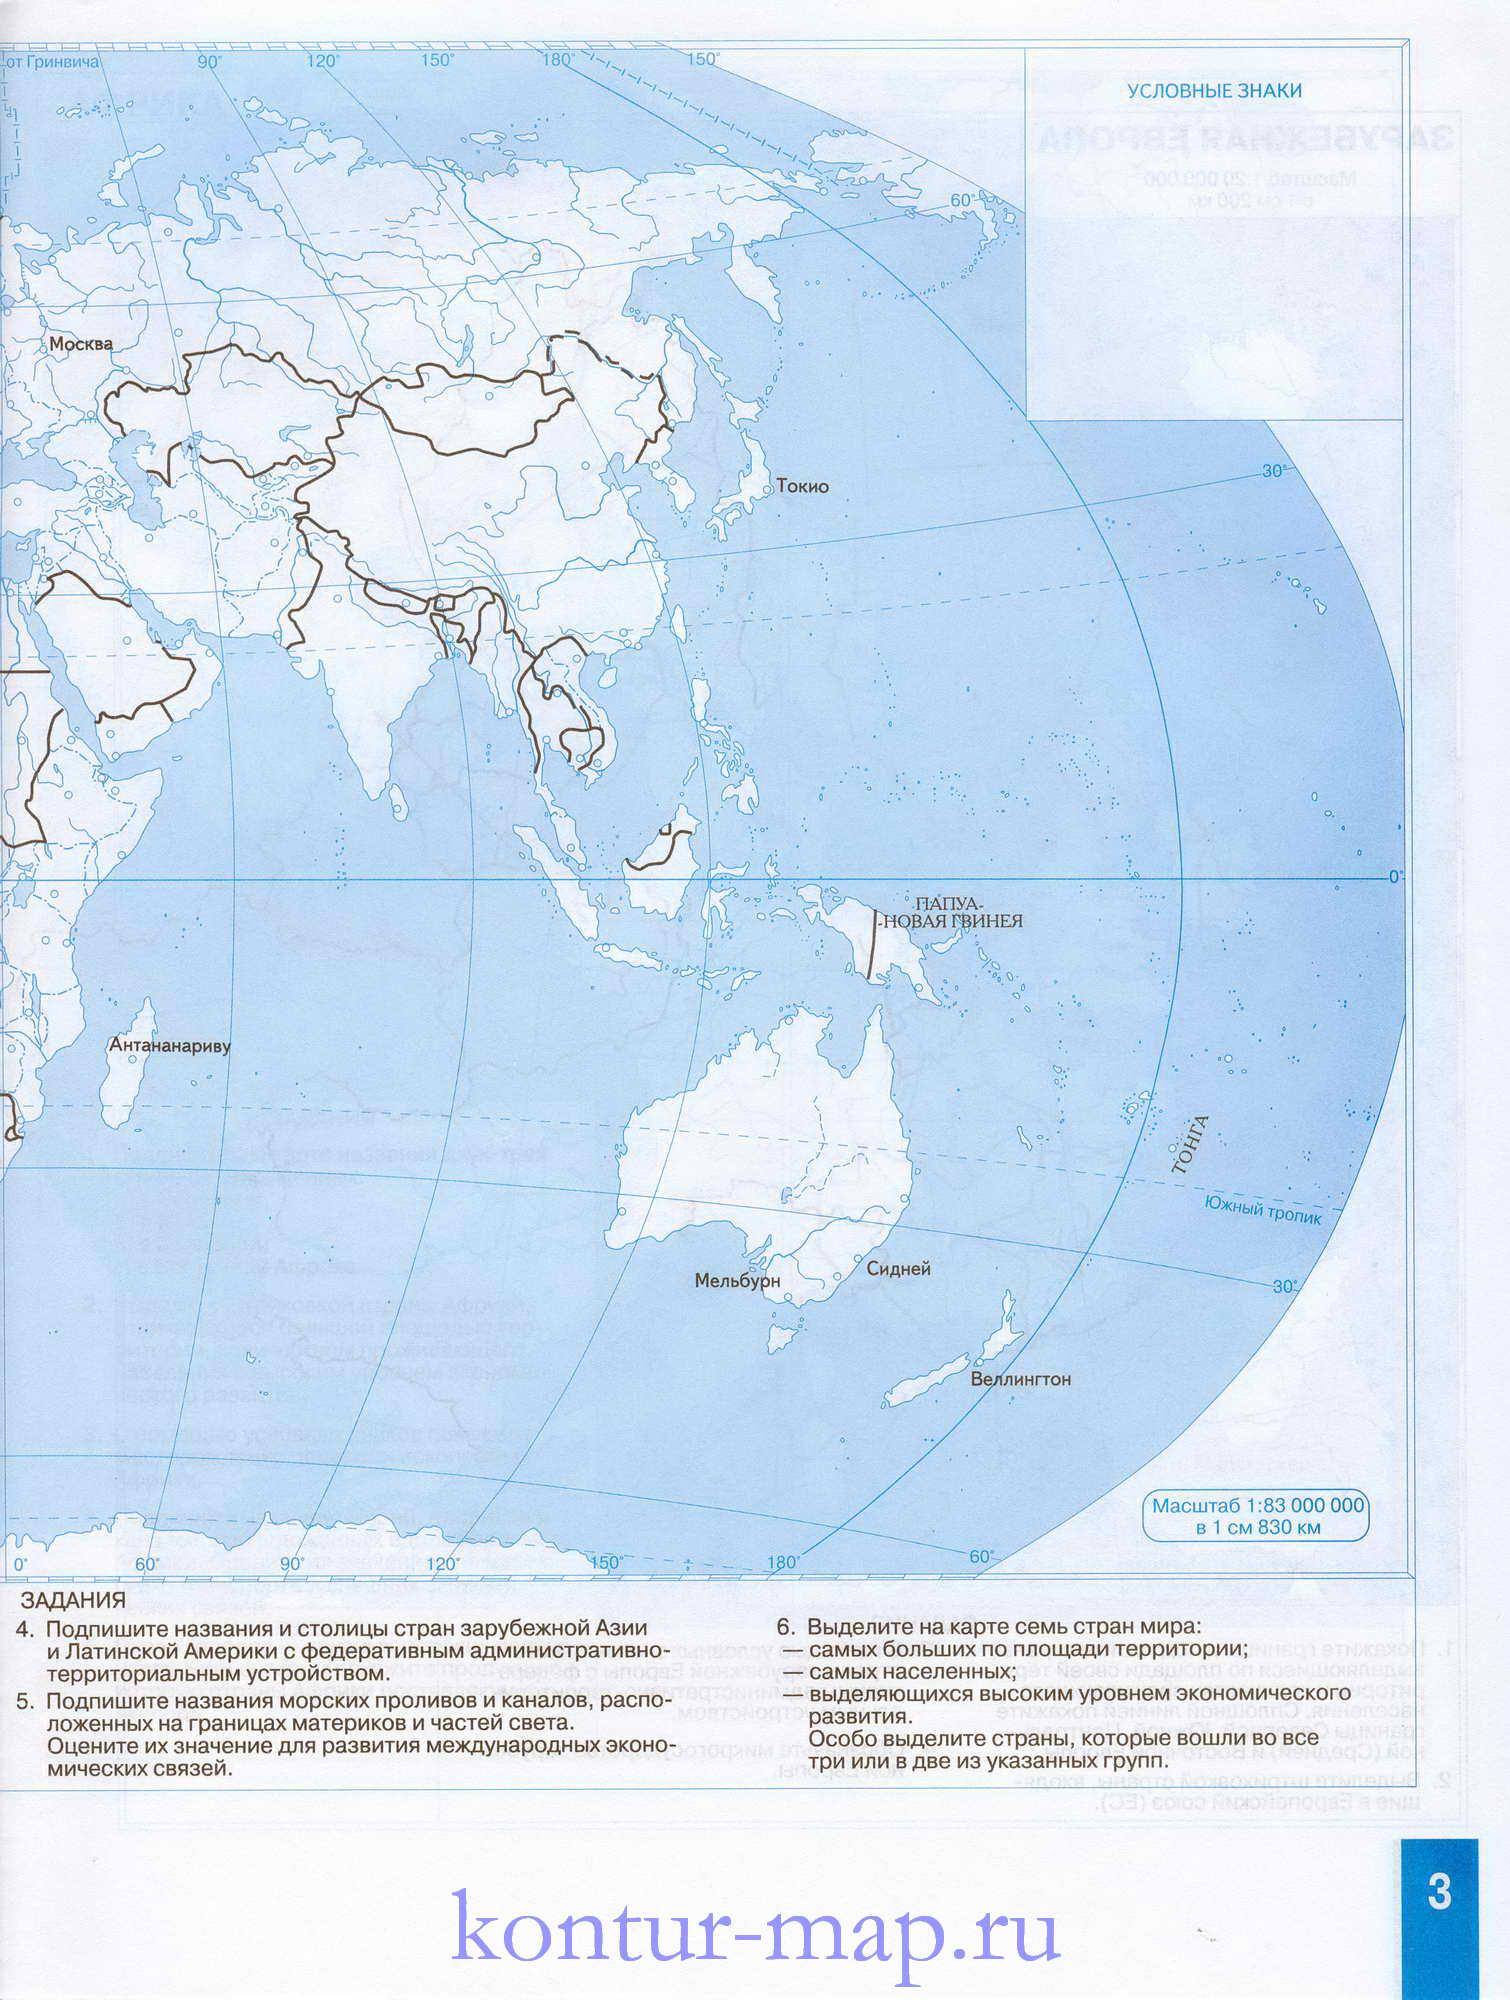 Контурная карта мира с заданиями. Контурная карта мира - география 10 класс.На врезке контурная карта Европы